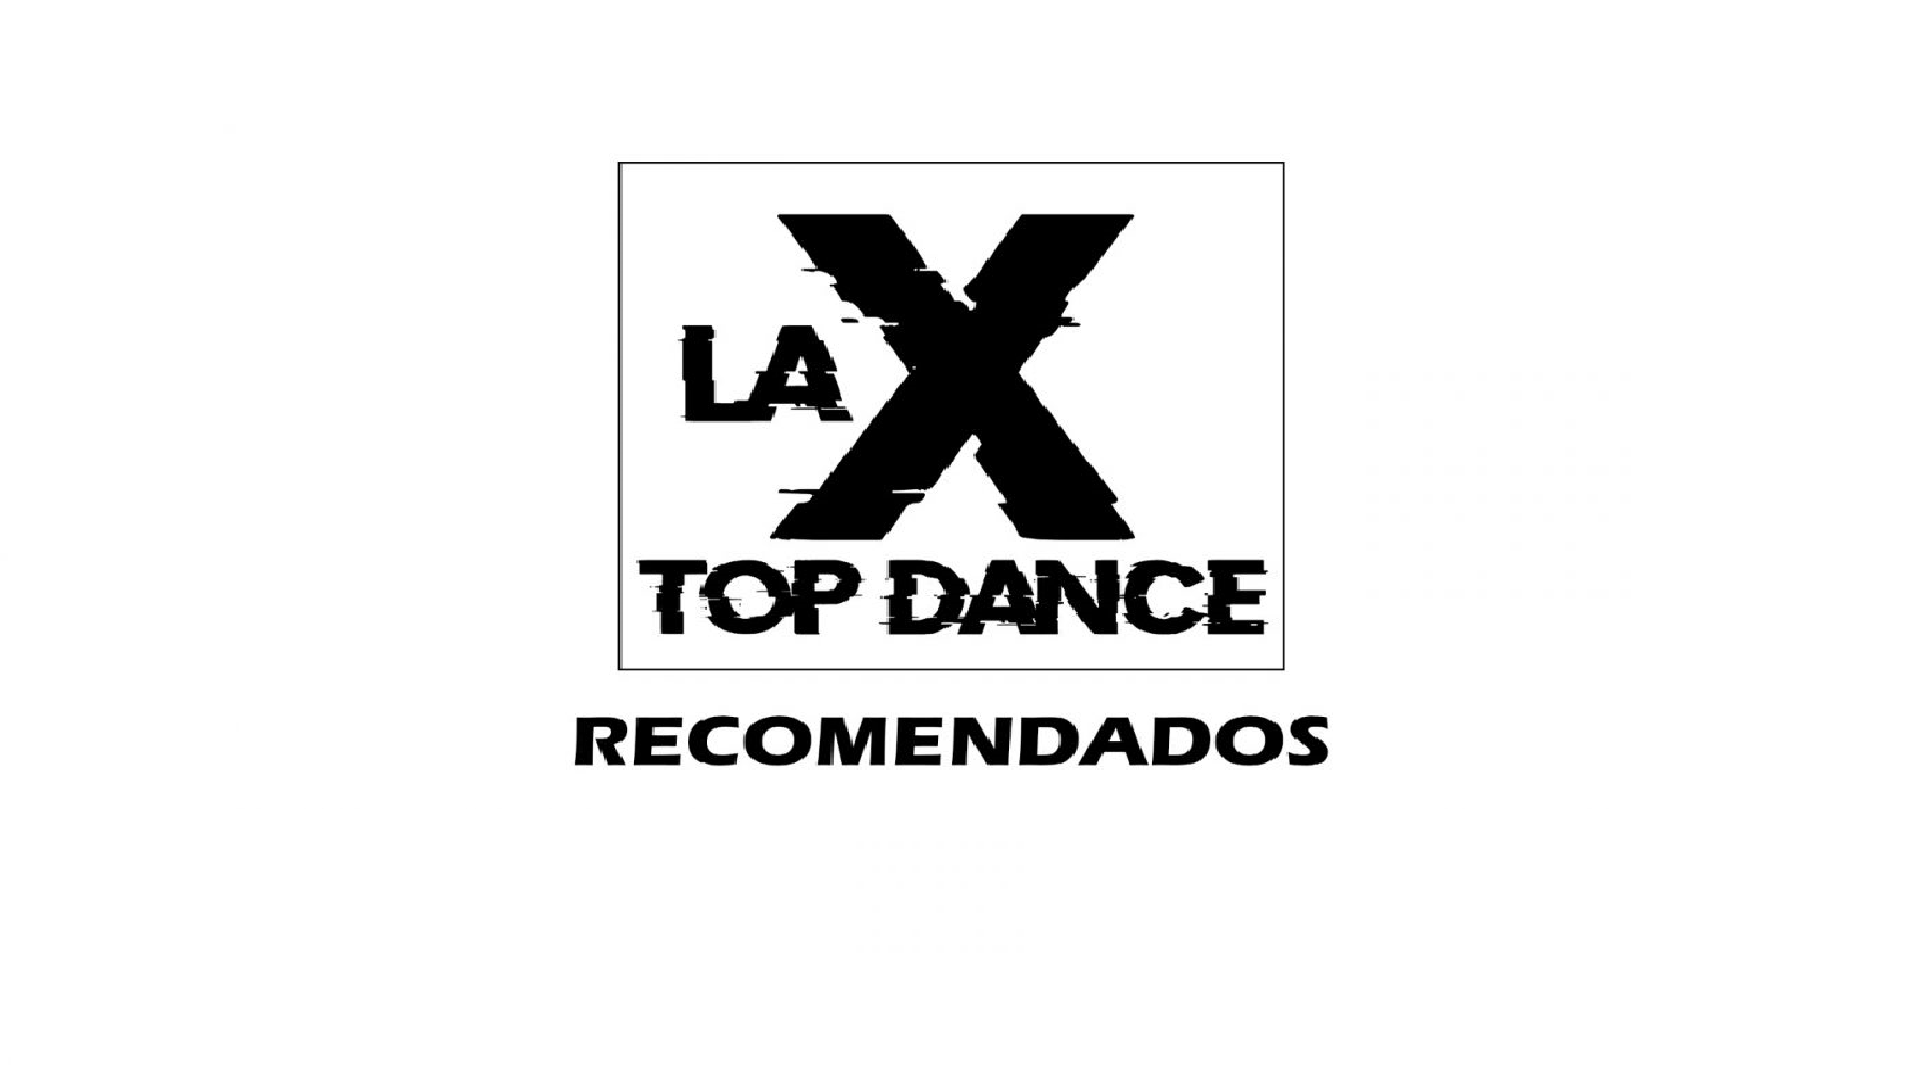 LA X TOP DANCE RECOMENDADOS 30 DE ABRIL